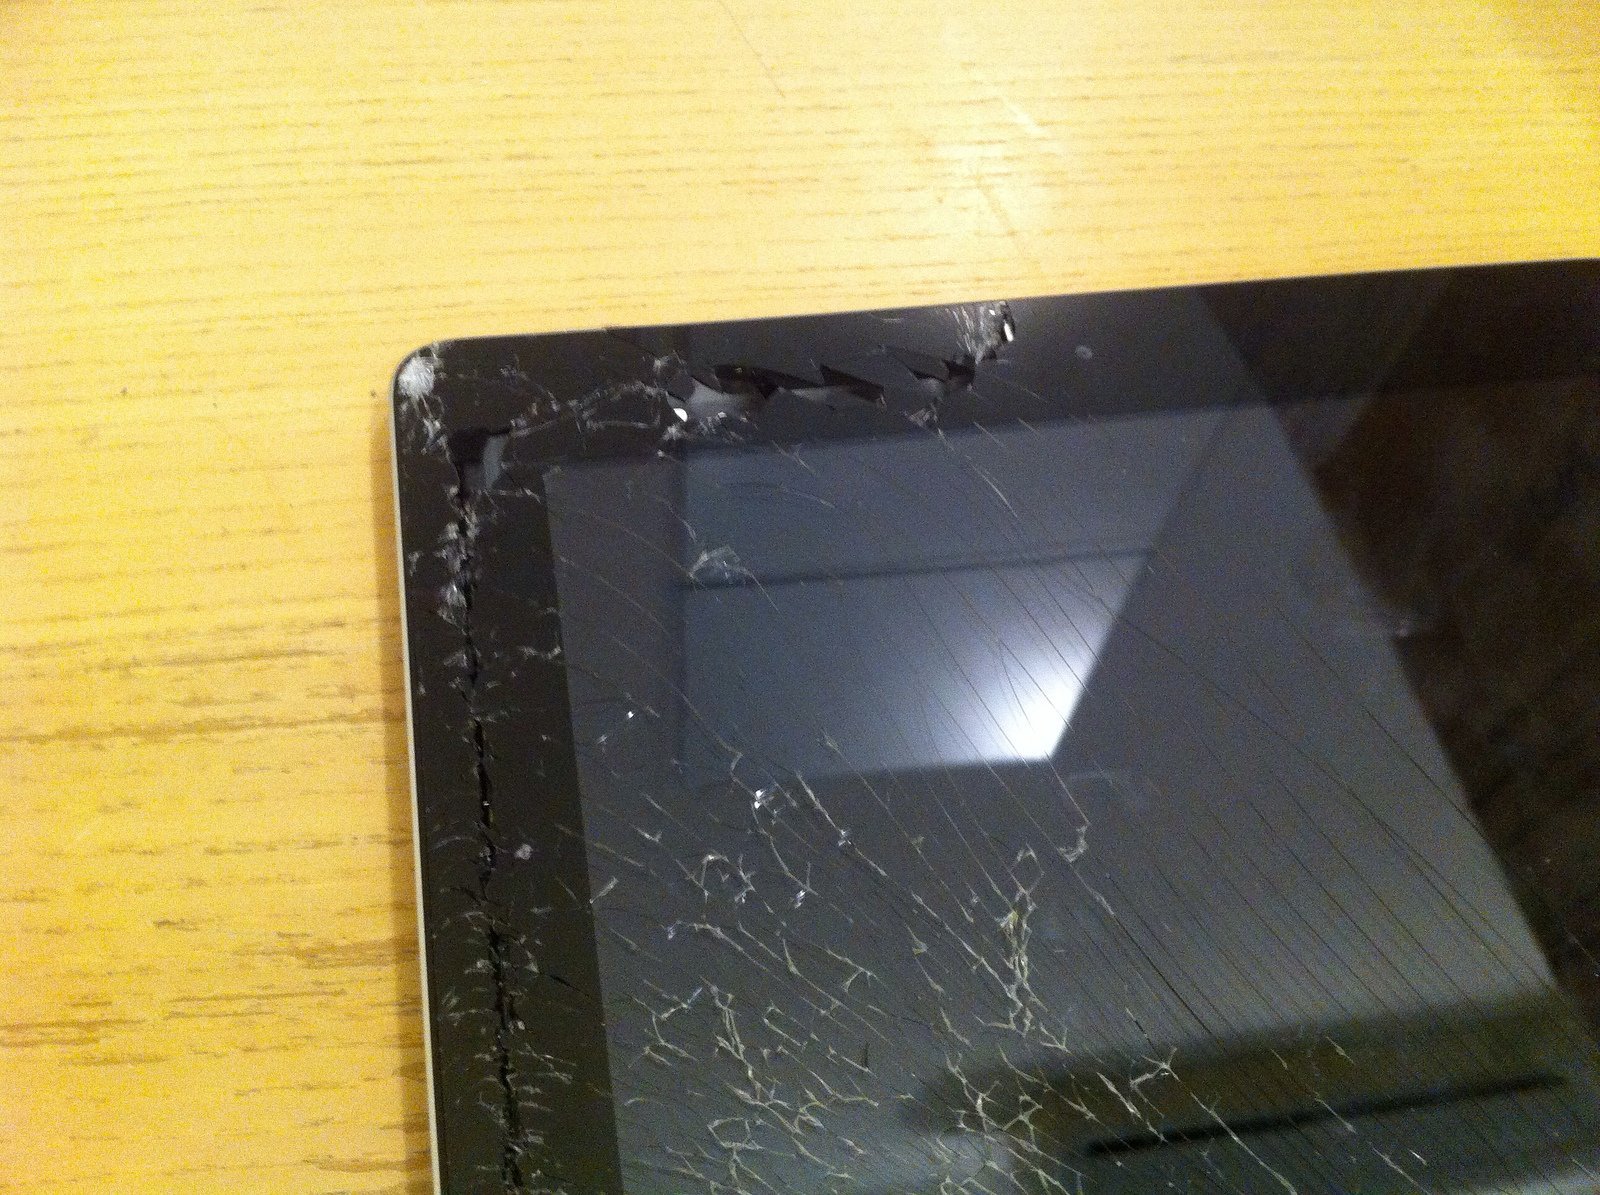 Cracked iPad screen